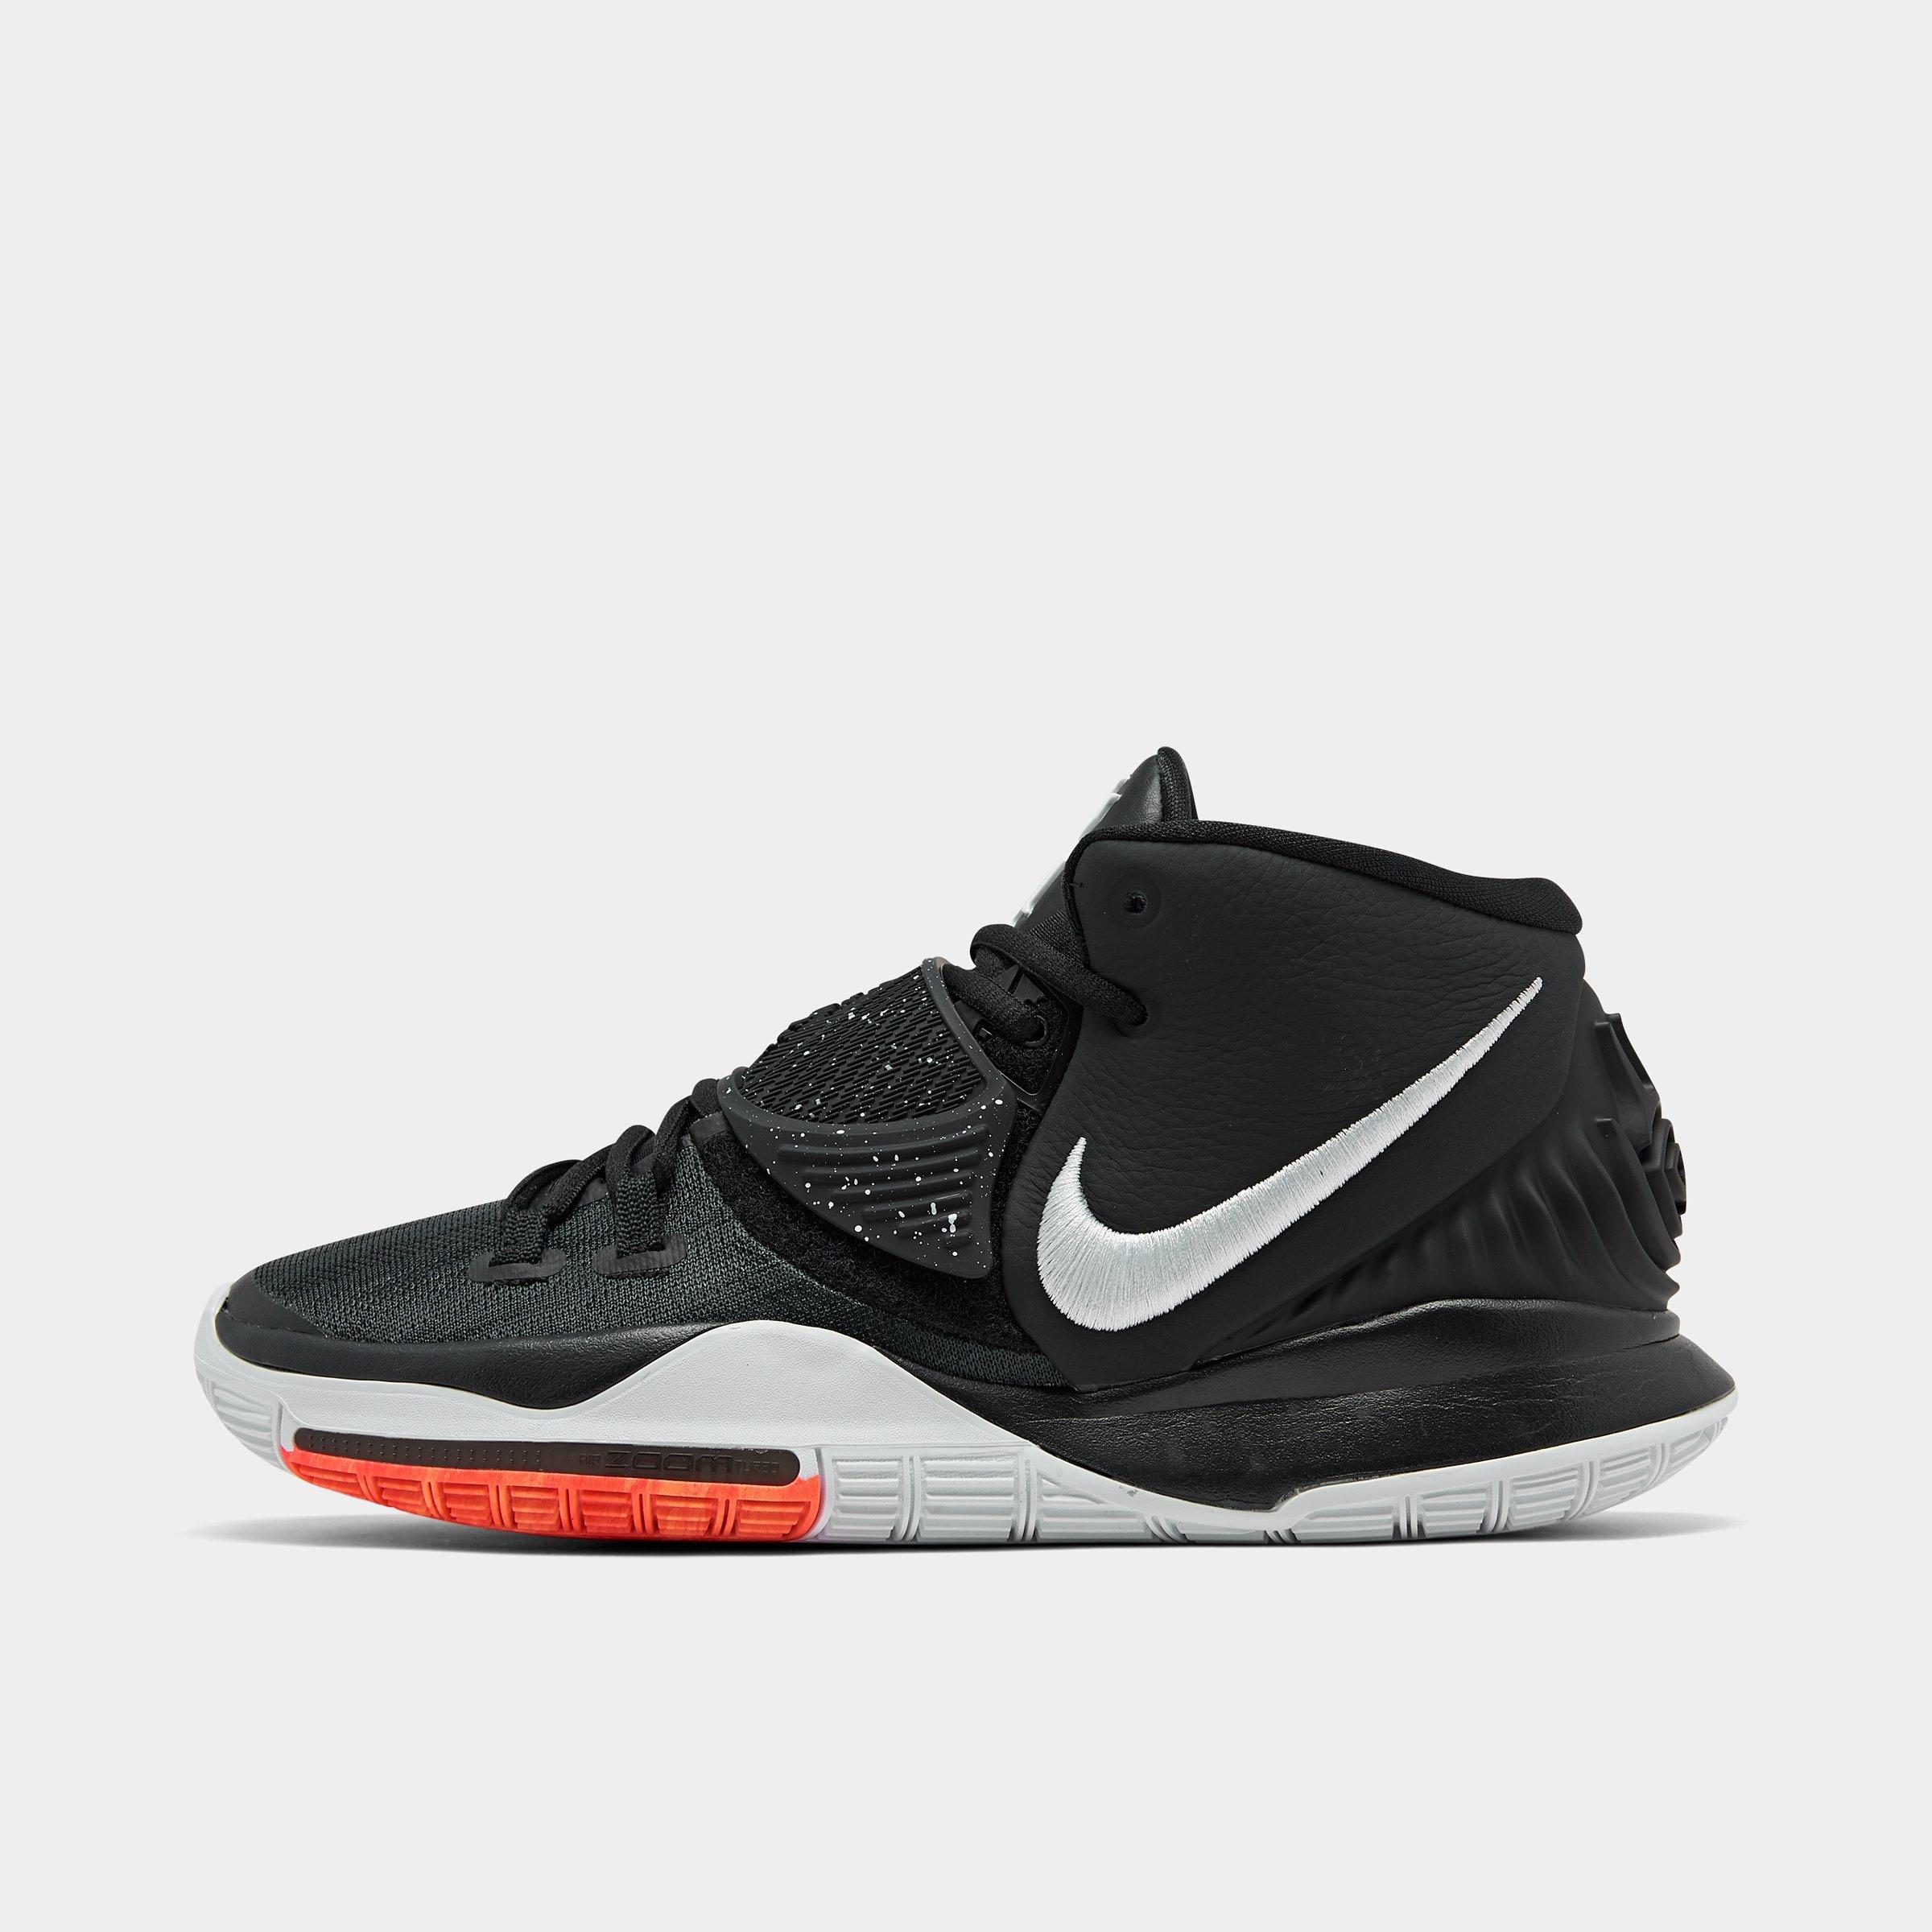 Nike Kyrie 6 N7 DETAILED LOOK RELEASE DATE PRICE